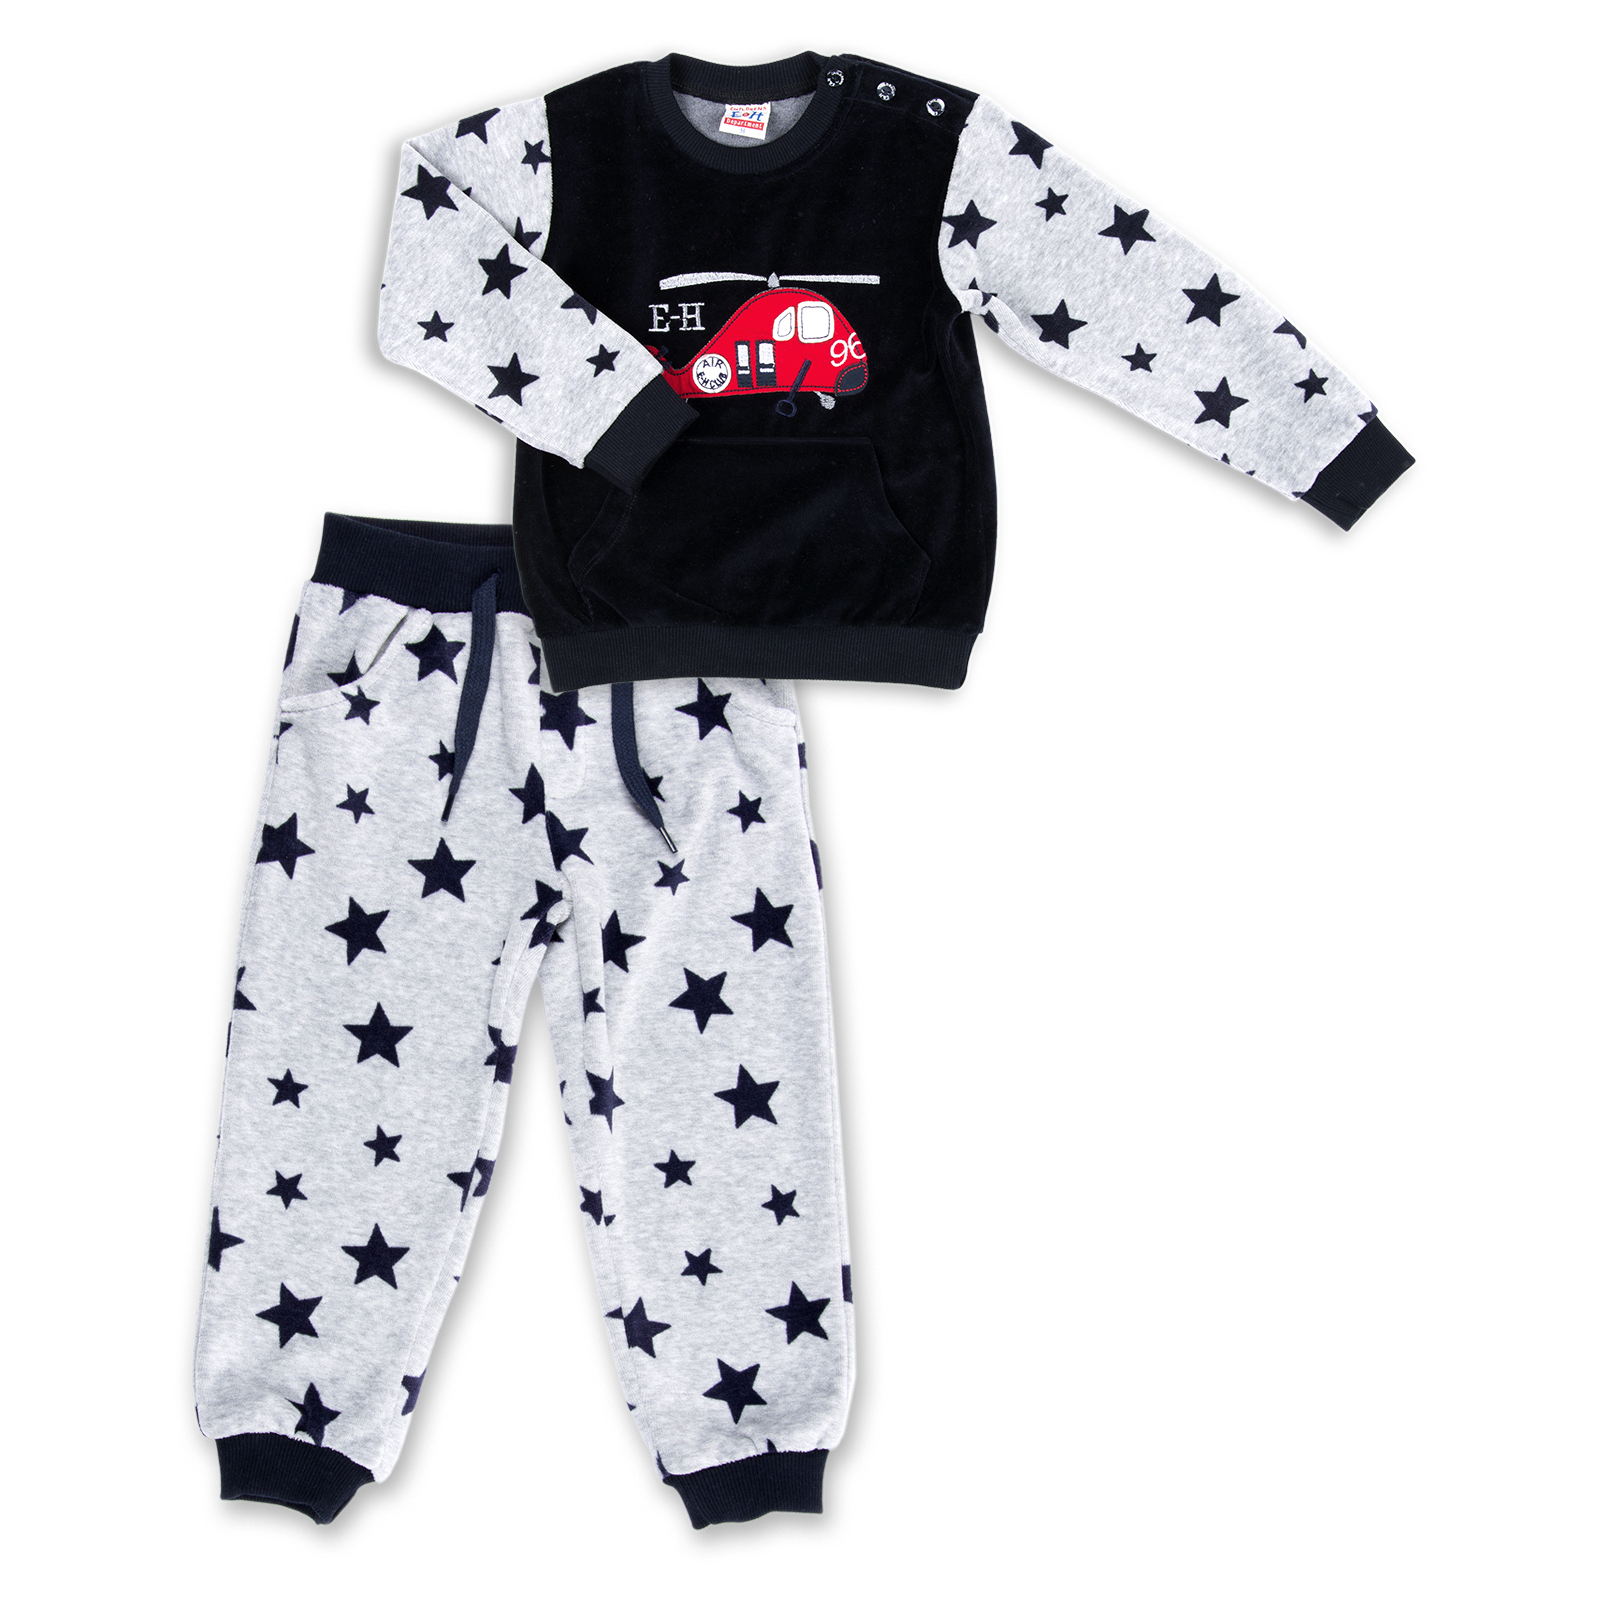 Набор детской одежды Breeze велюровый с вертолетом и штанишками в звездочку (8113-98/B-dark blue)